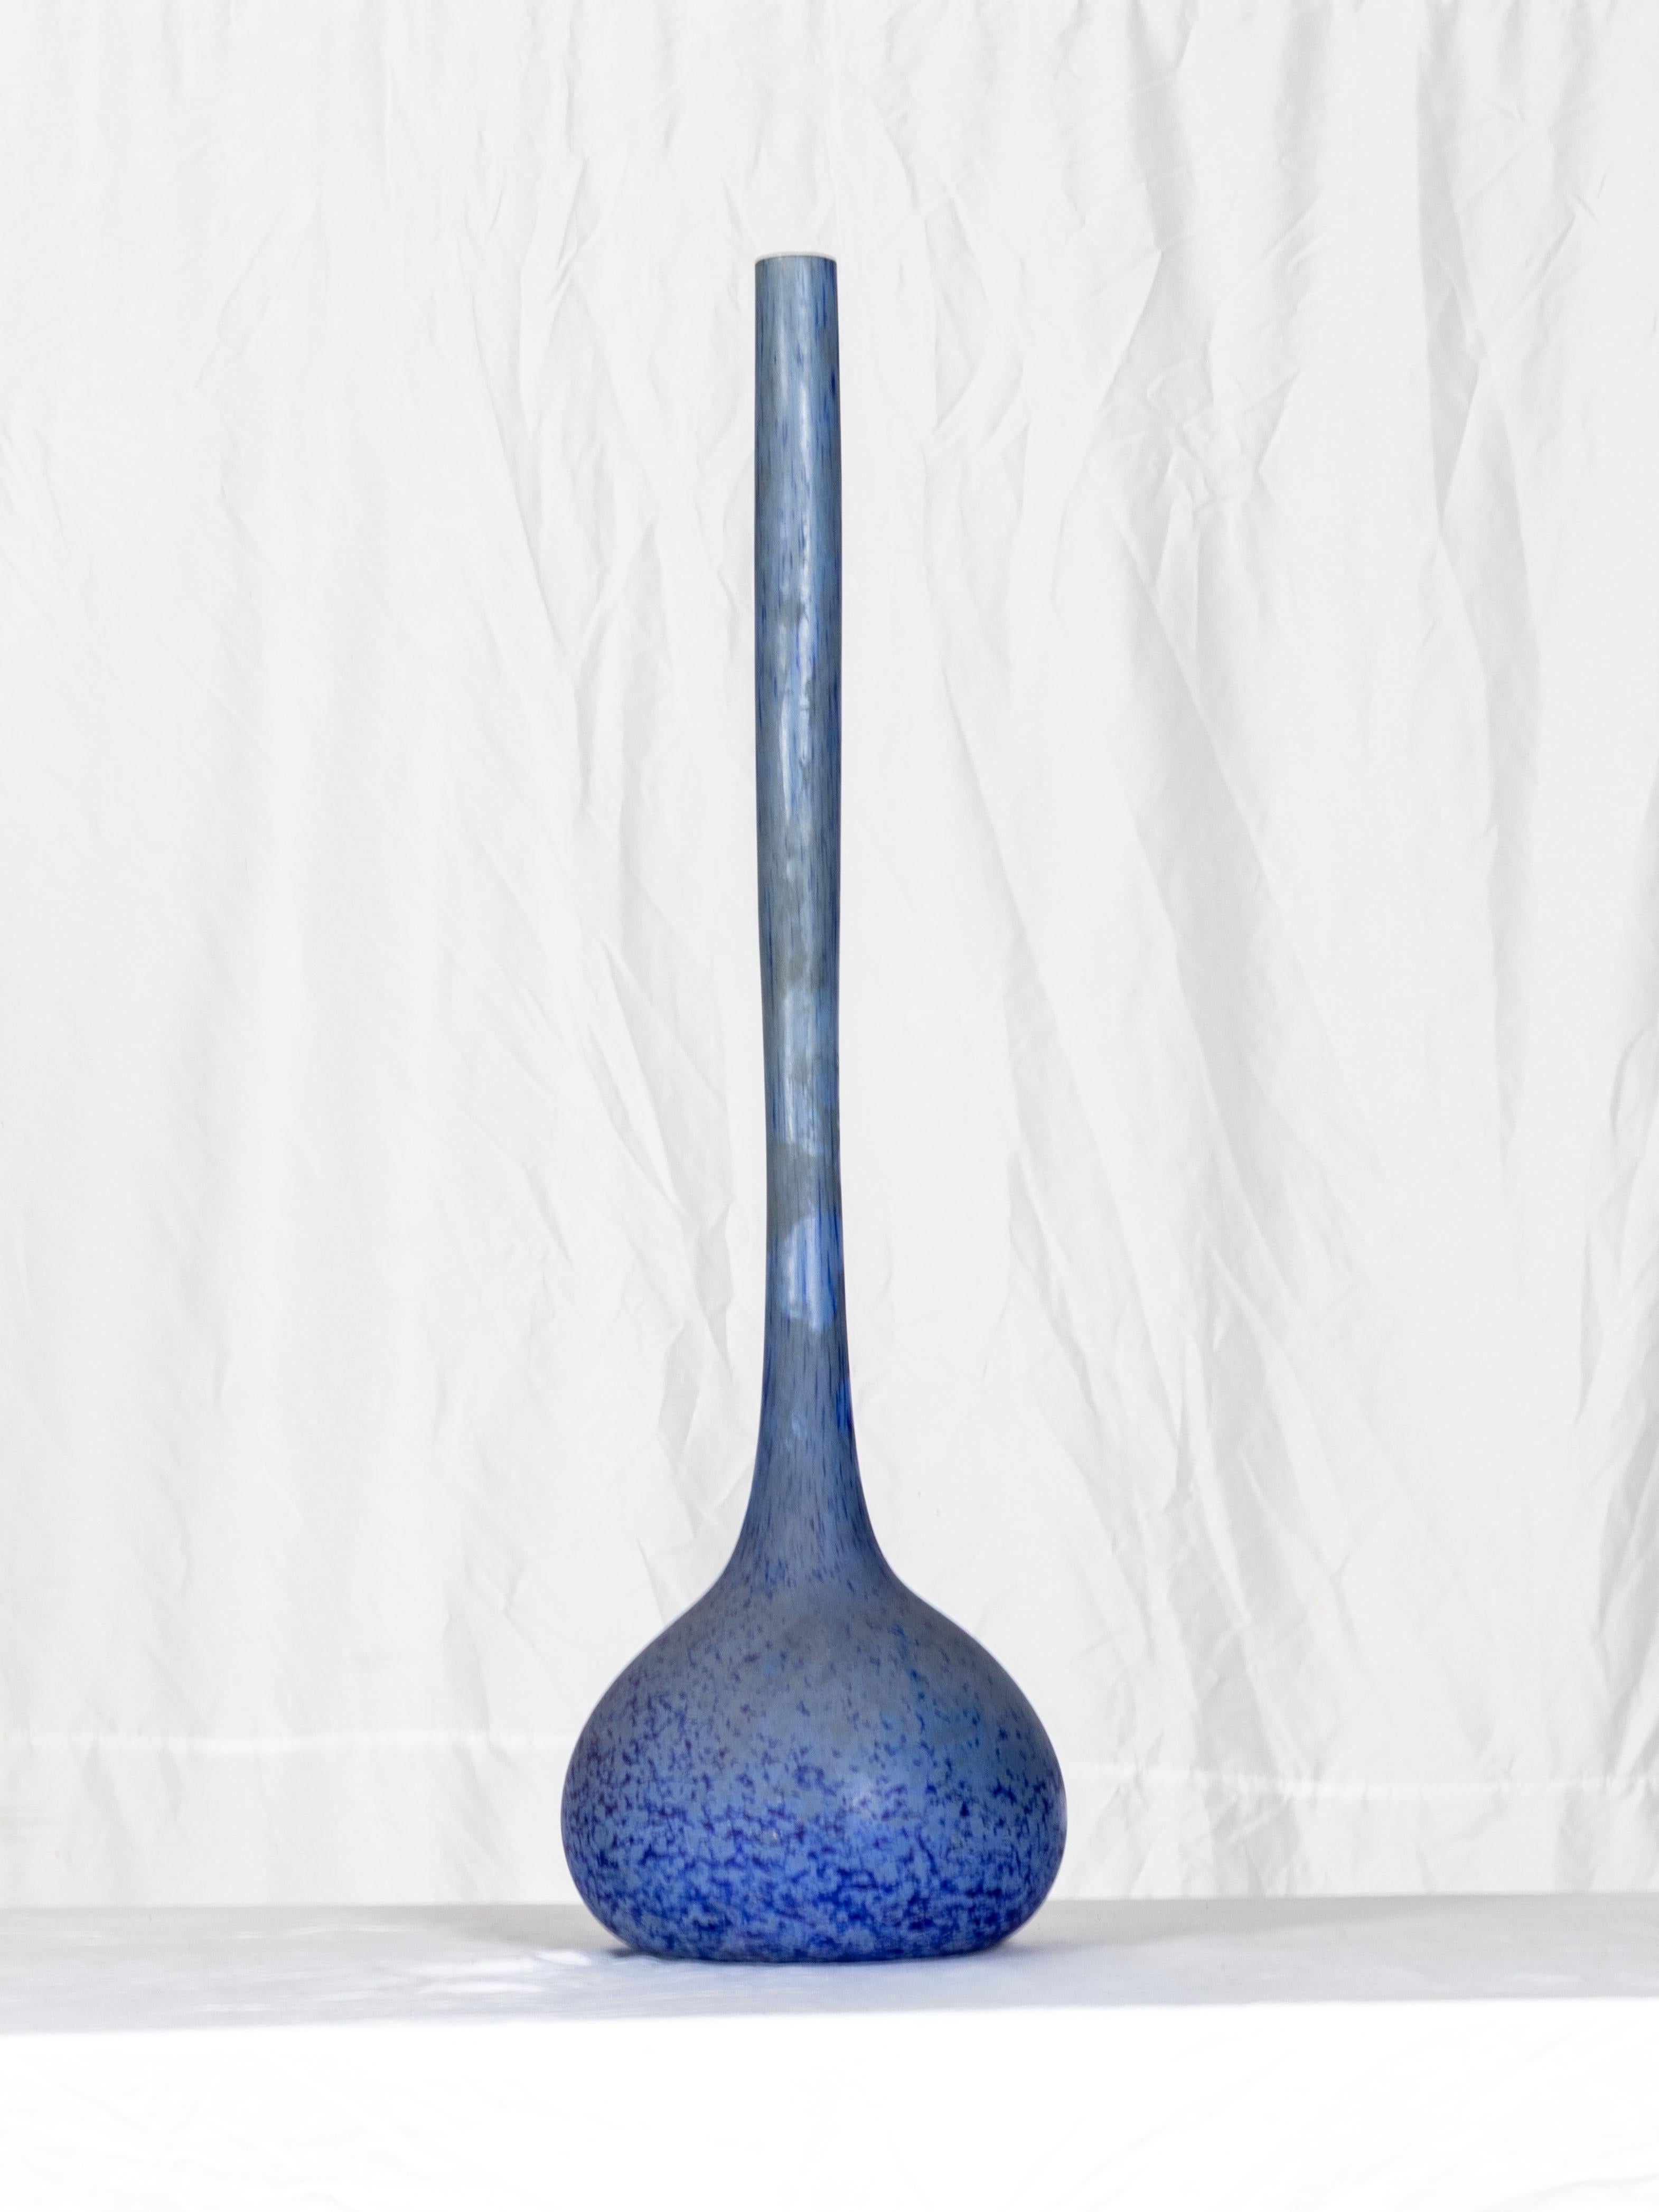 20th Century Art Deco Blue Glass Vase solitaire by André Delatte  For Sale